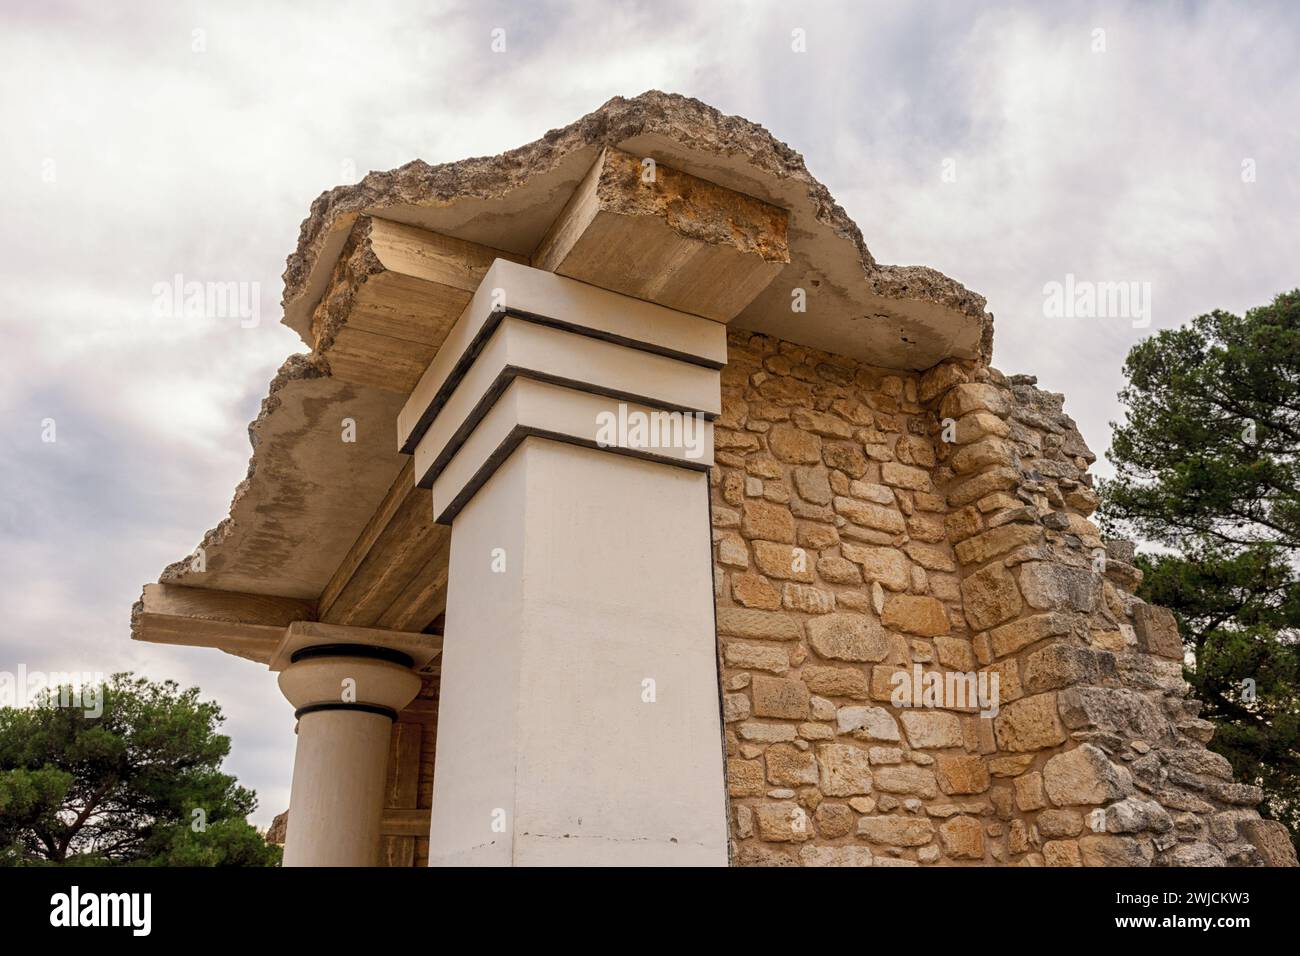 Alte Kolumnen im Palast von Knossos auf Kreta, Griechenland. Stockfoto